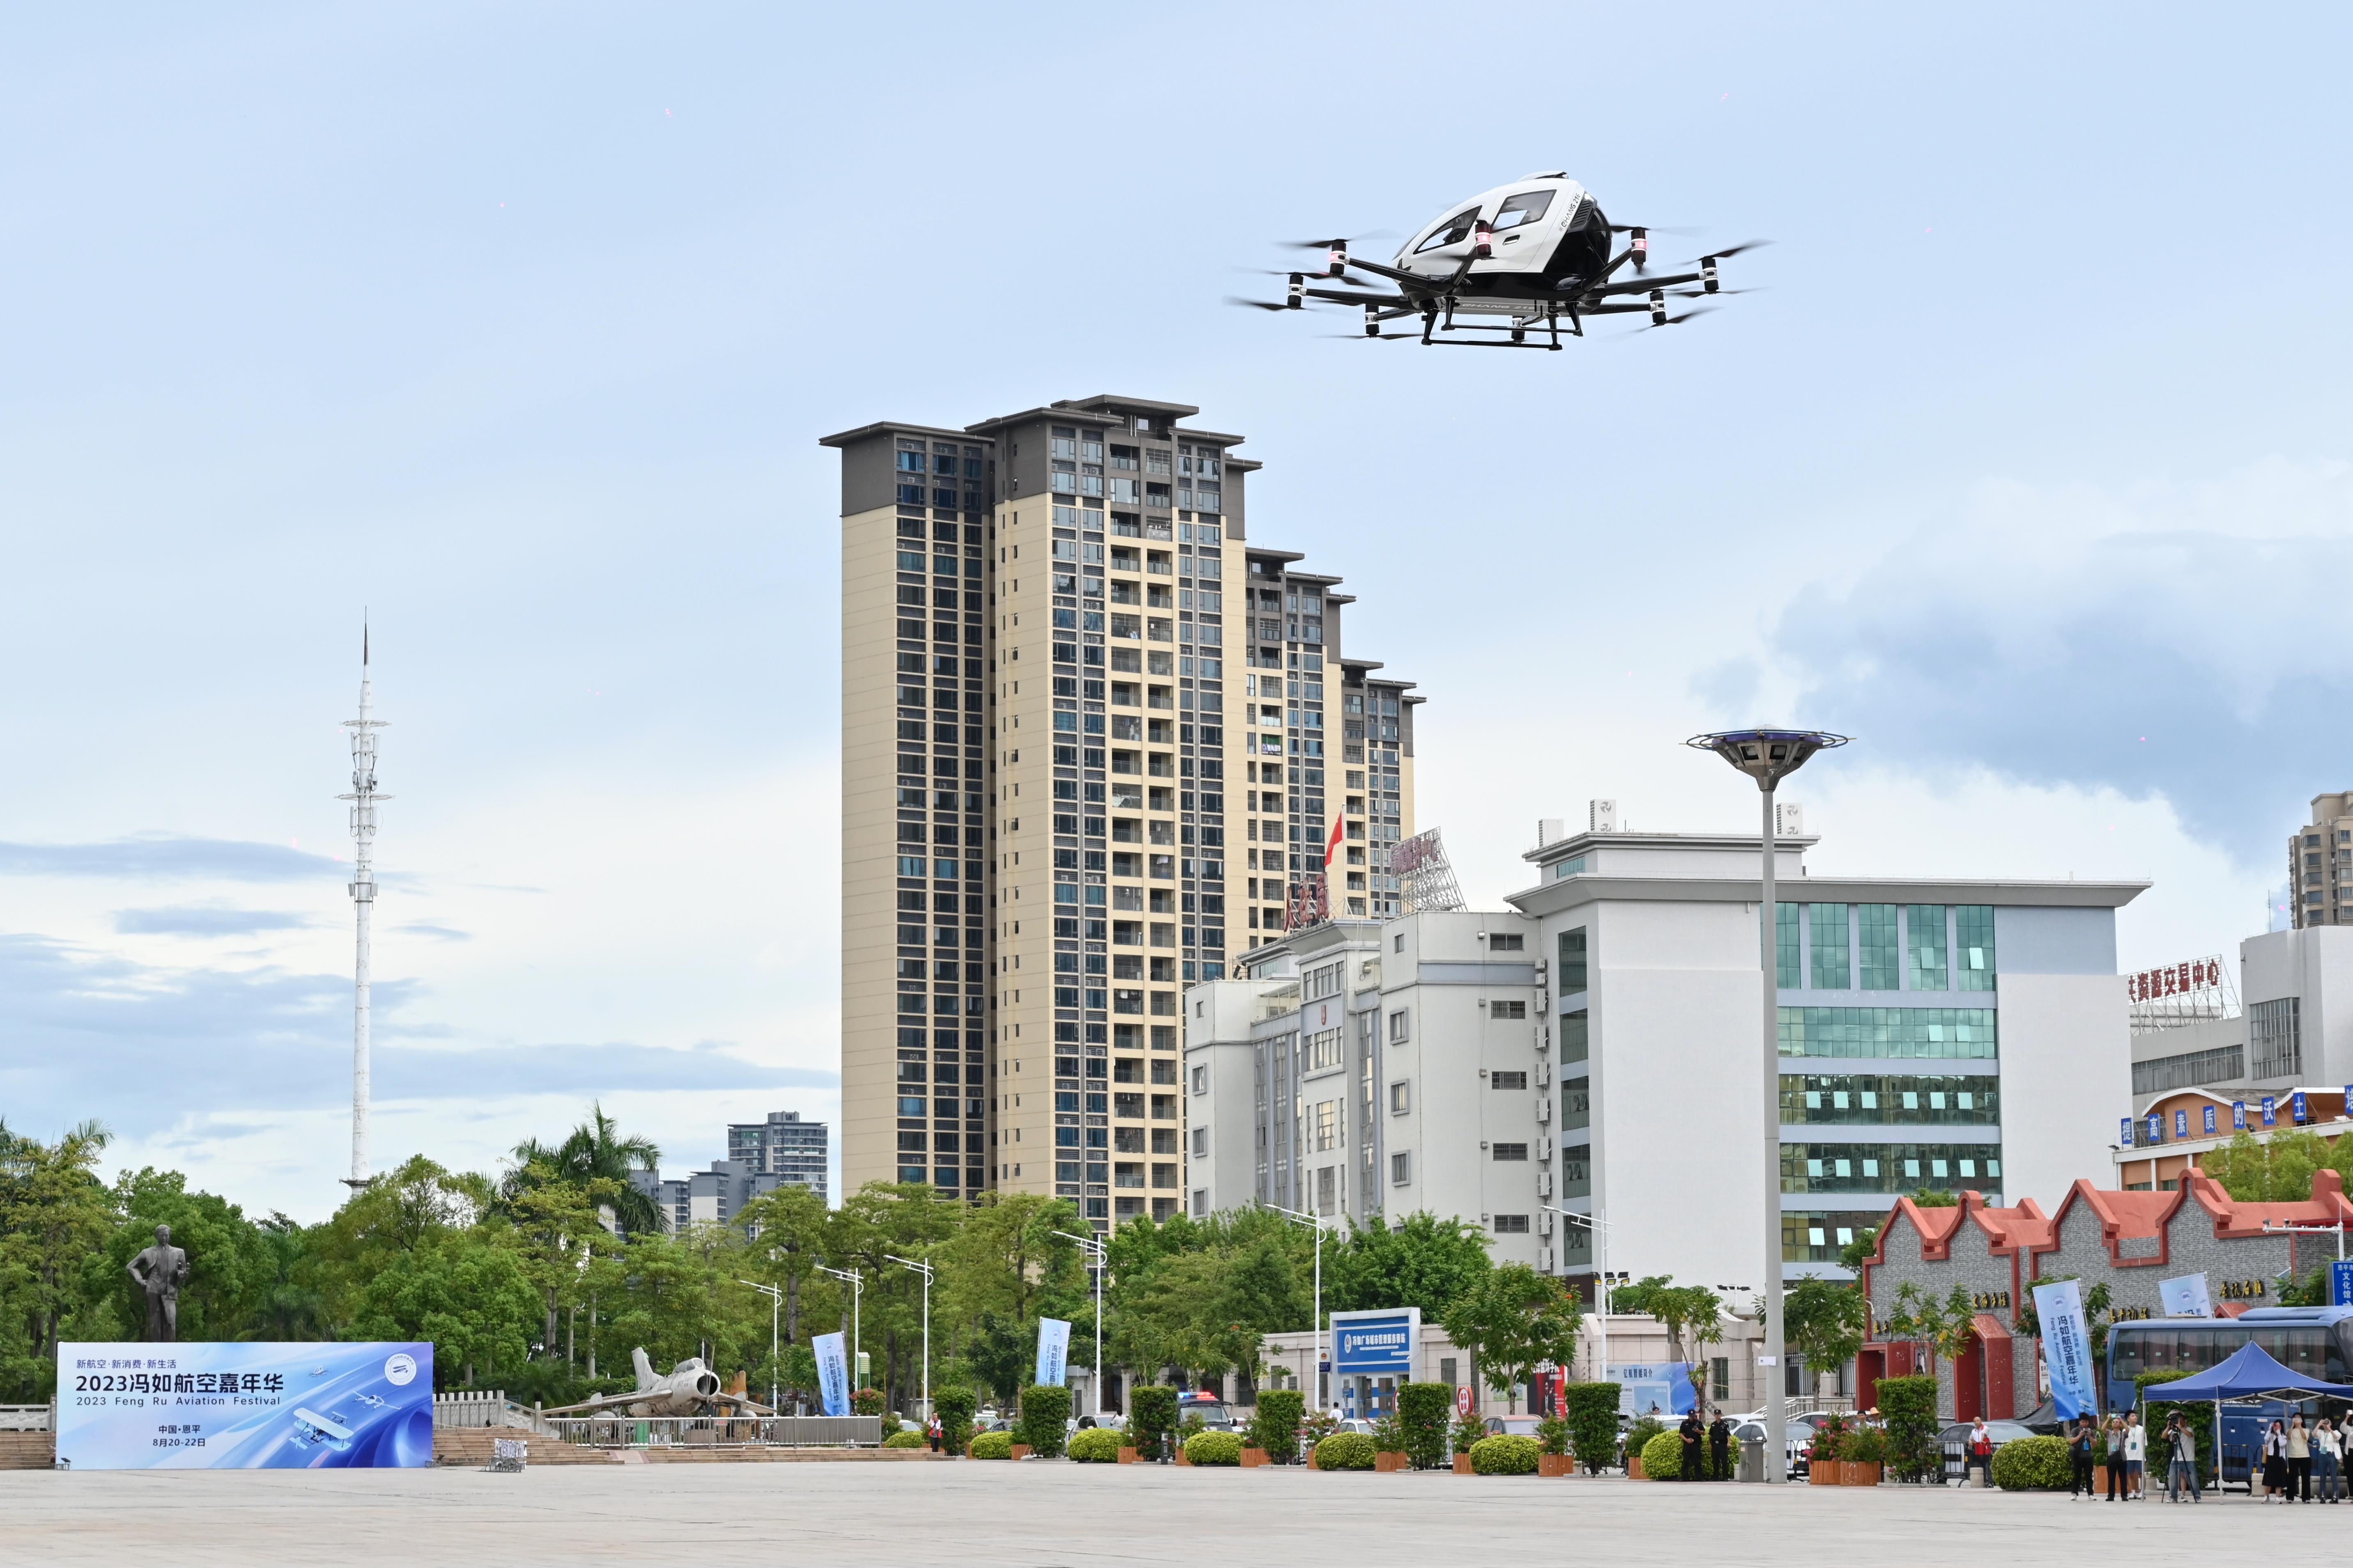 广州亿航智能EH216-S无人航空载具颁发生产许可证已正式具备量产资格。（中新社）